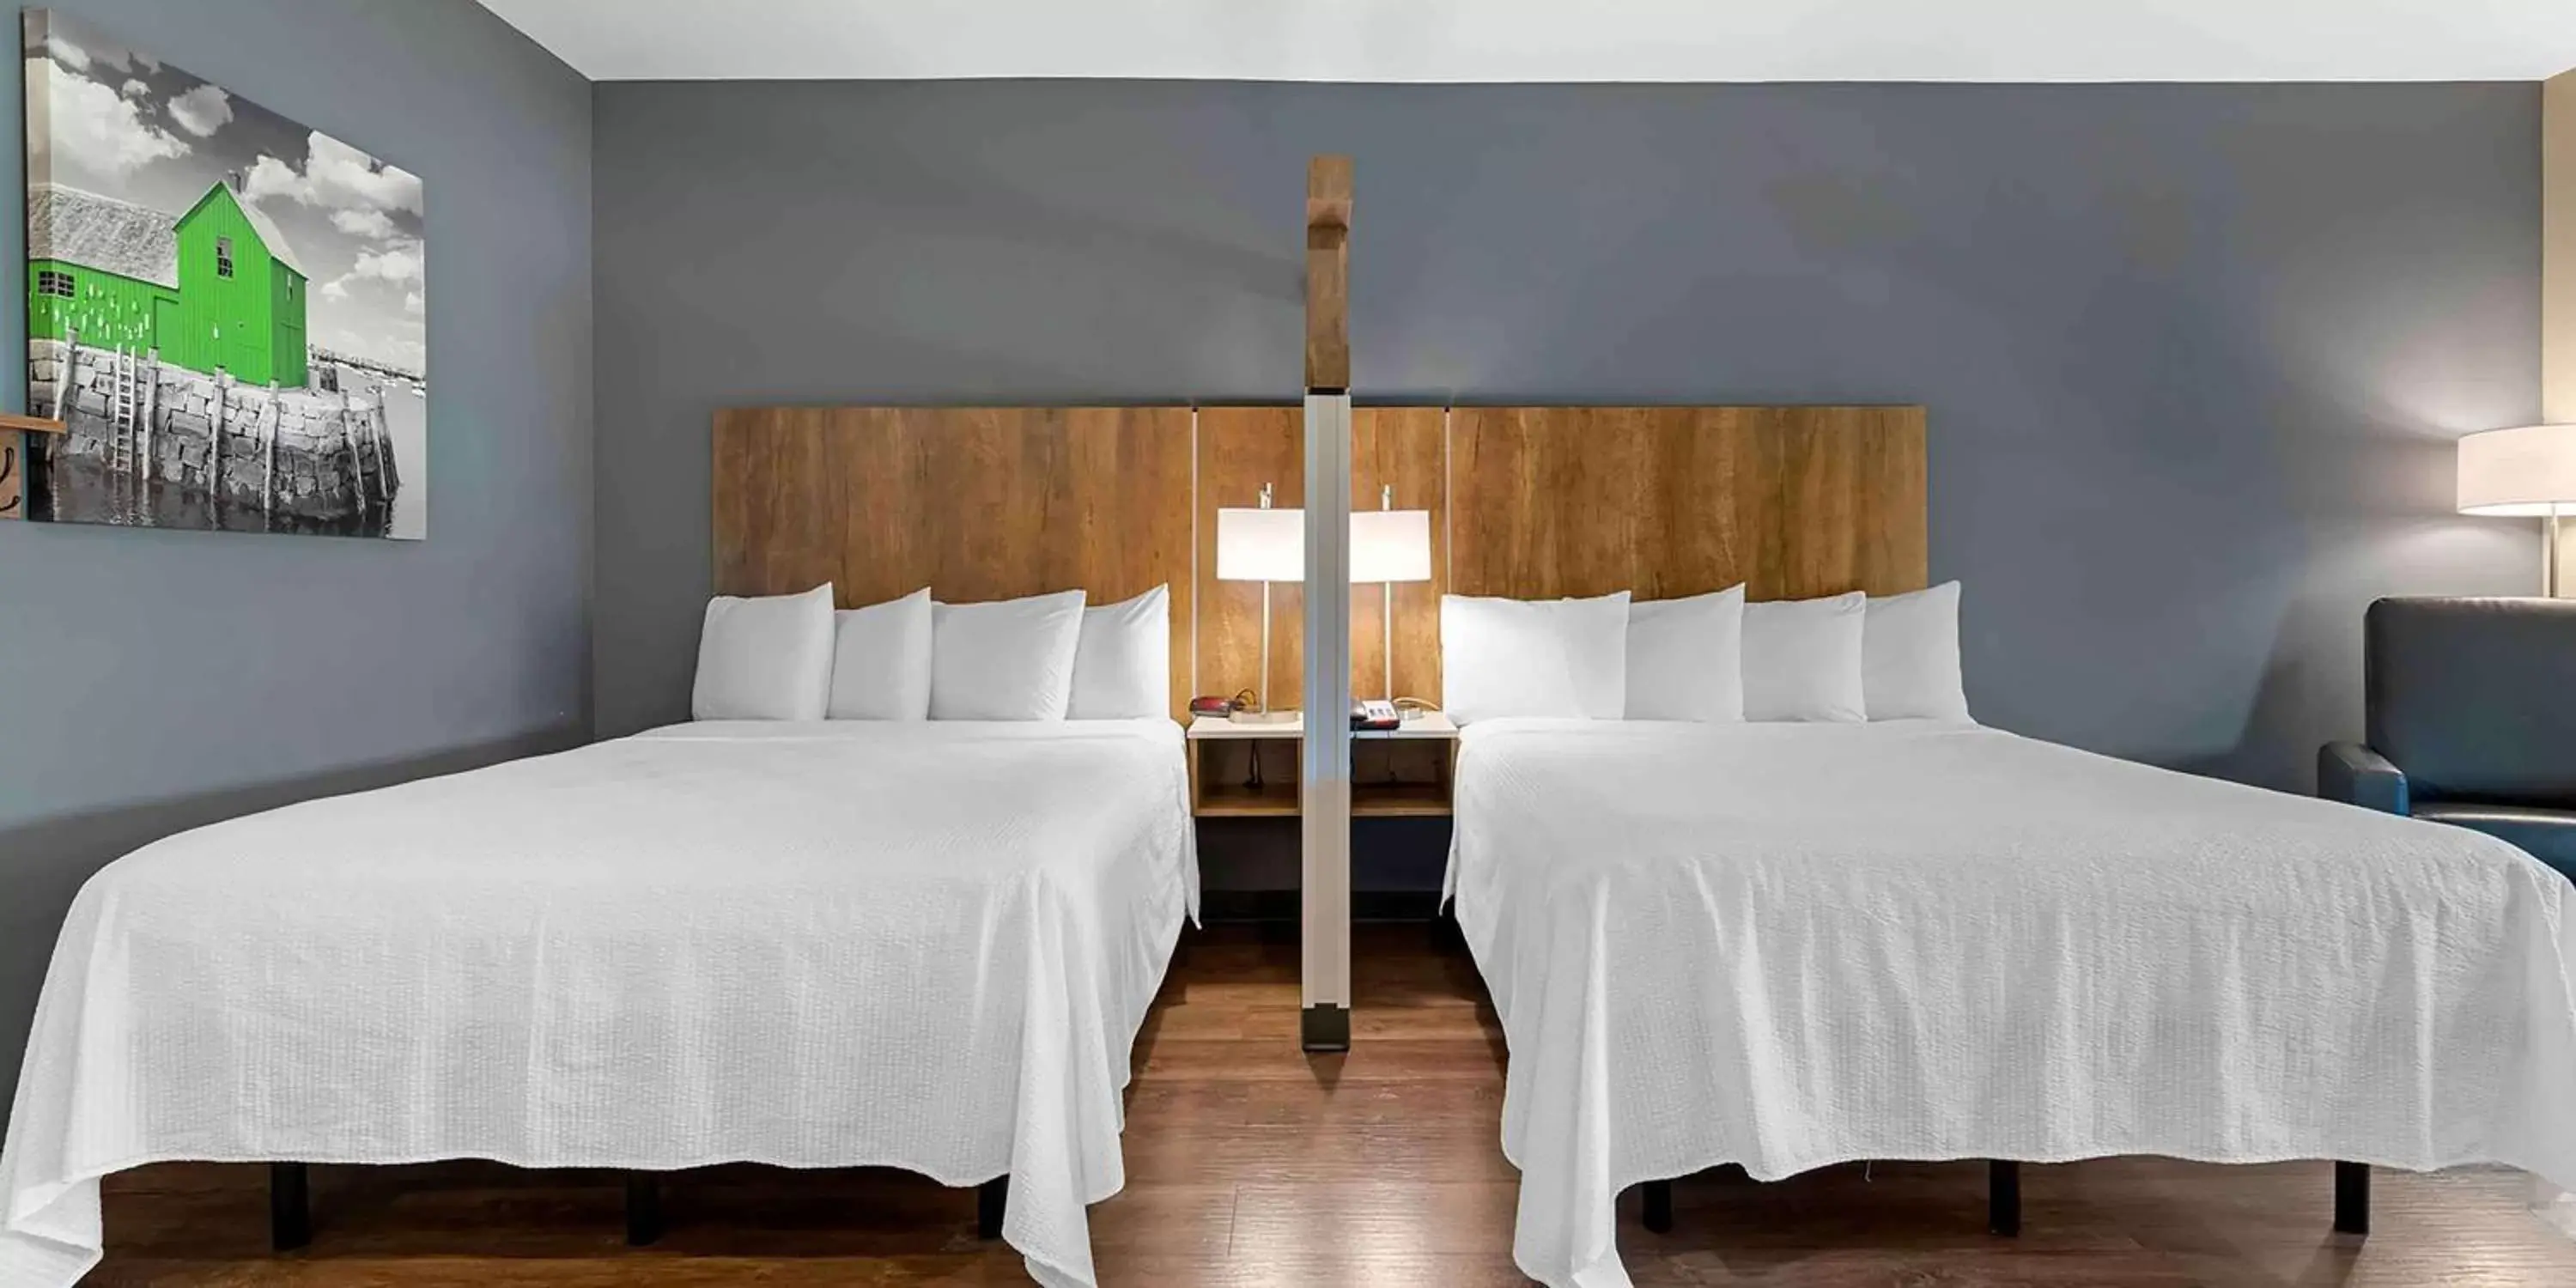 Bedroom, Bed in Extended Stay America Premier Suites - Savannah - Pooler